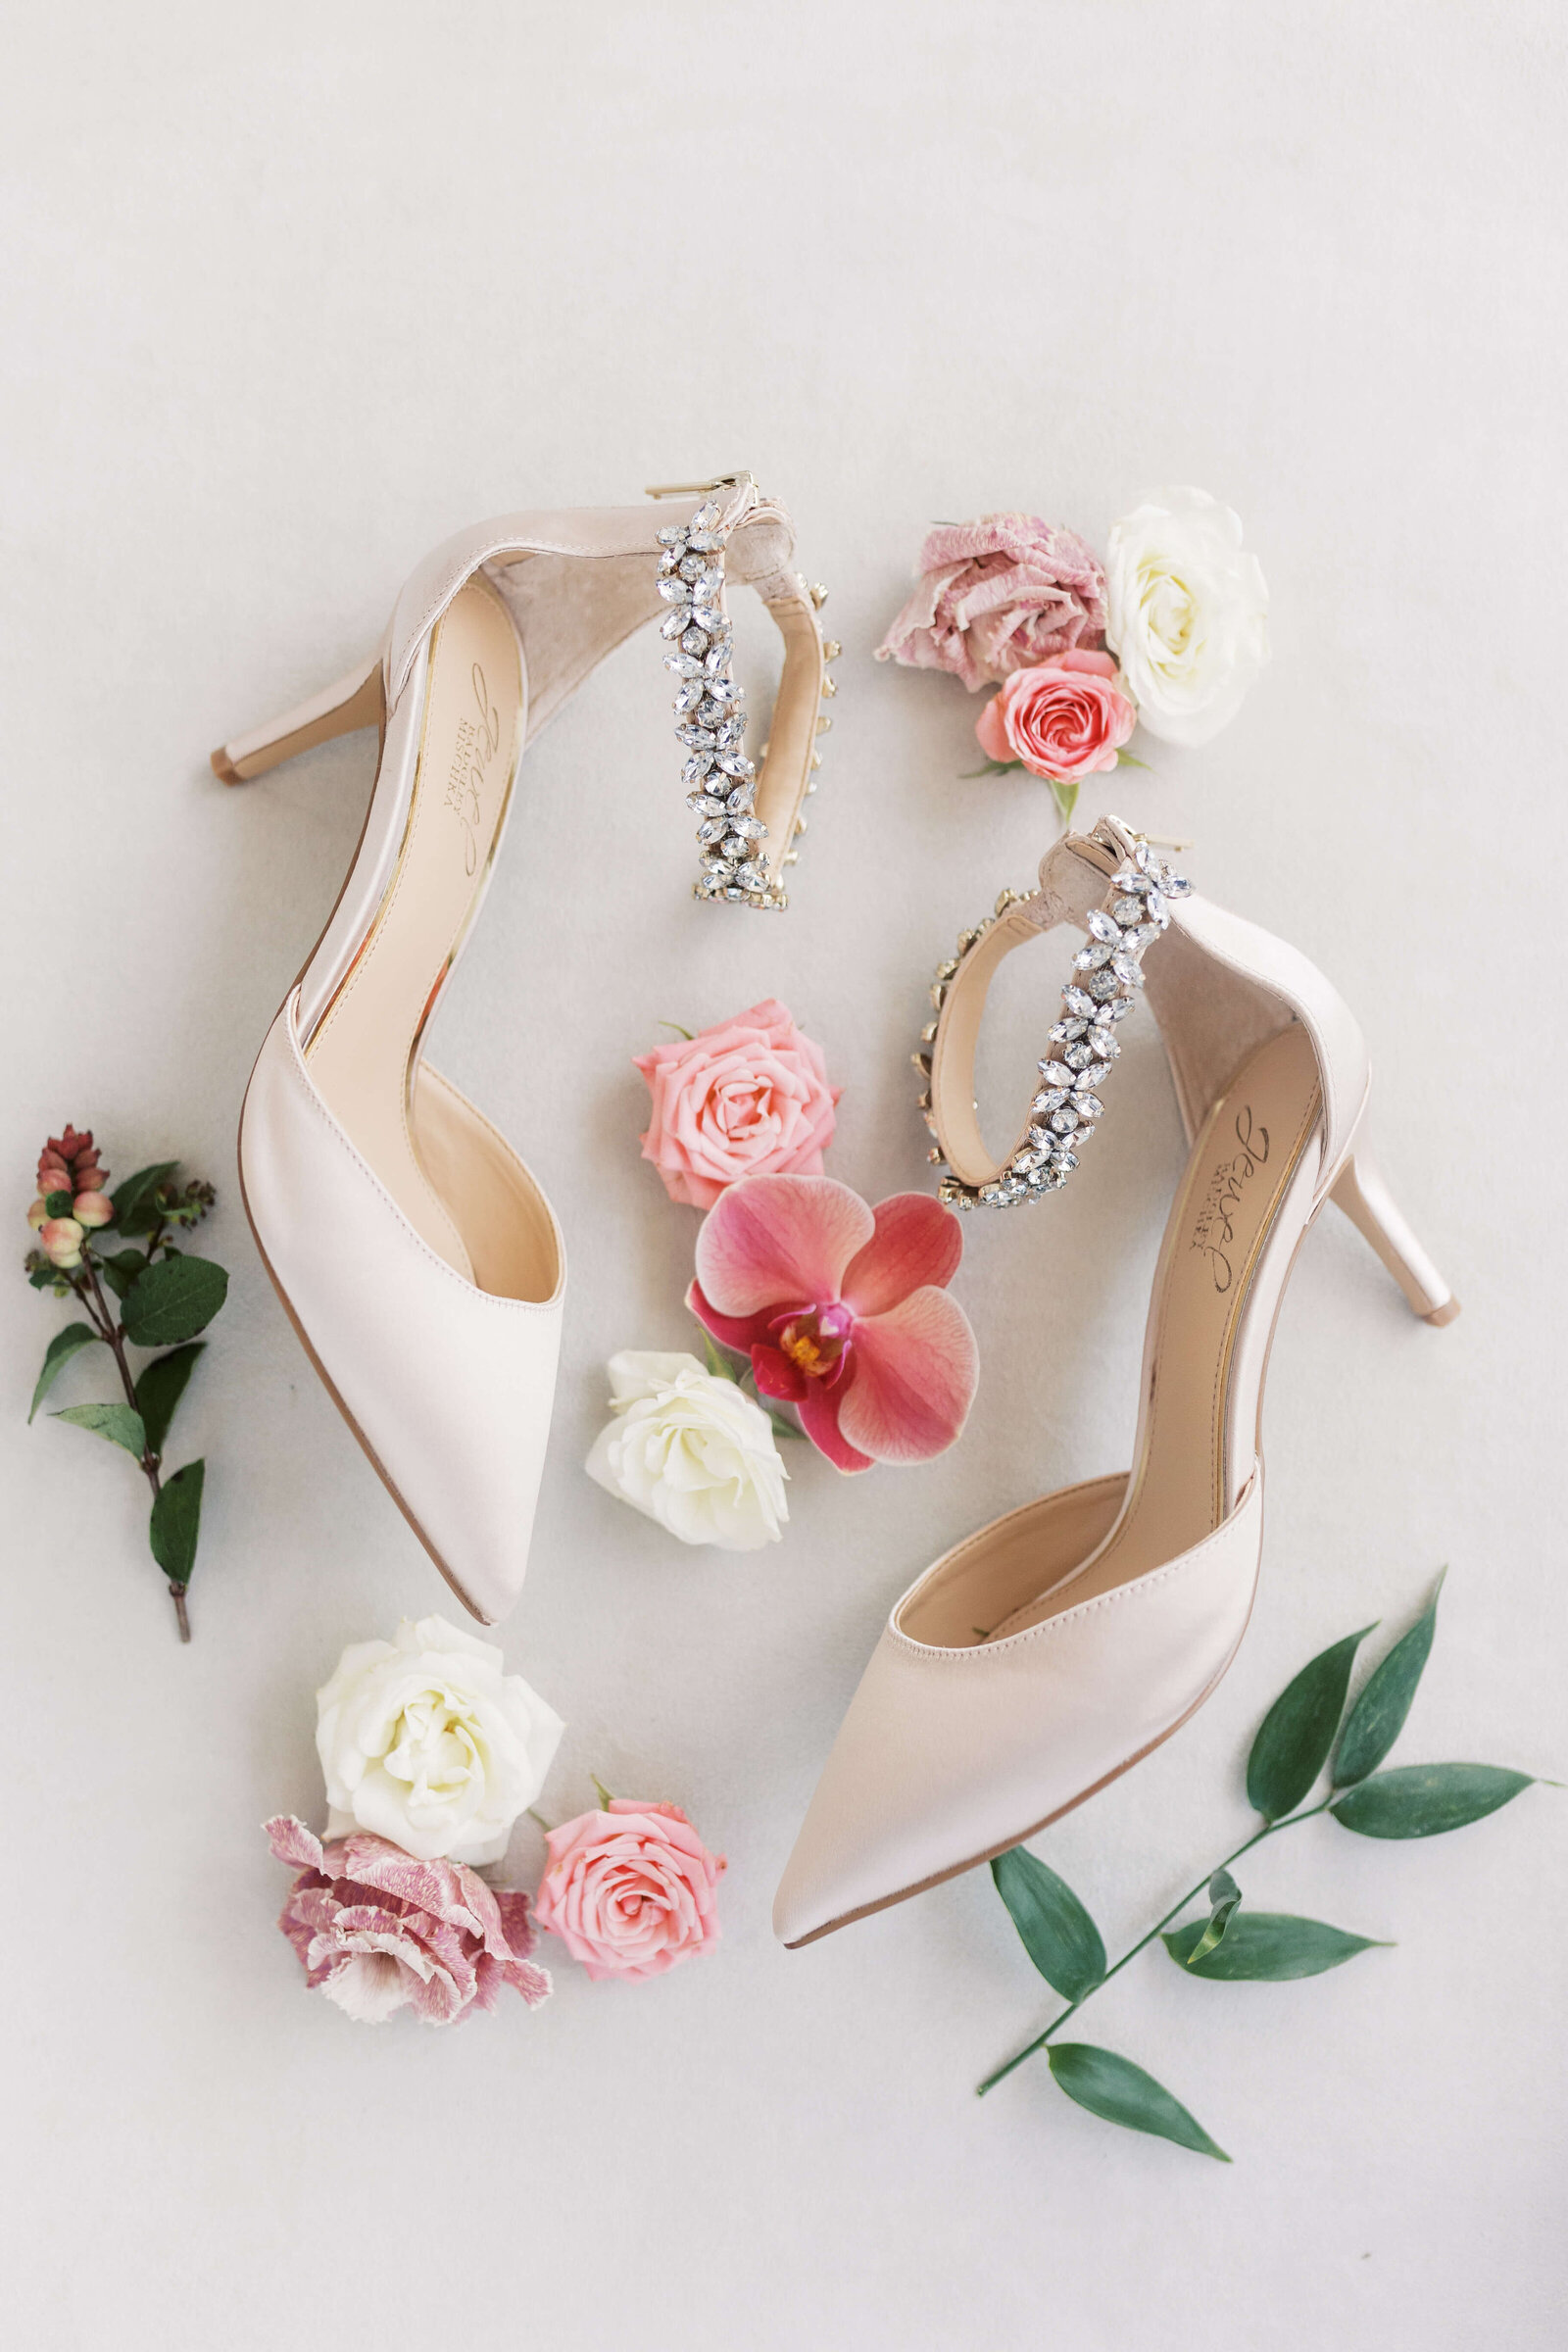 Bridal shoes detail photo.